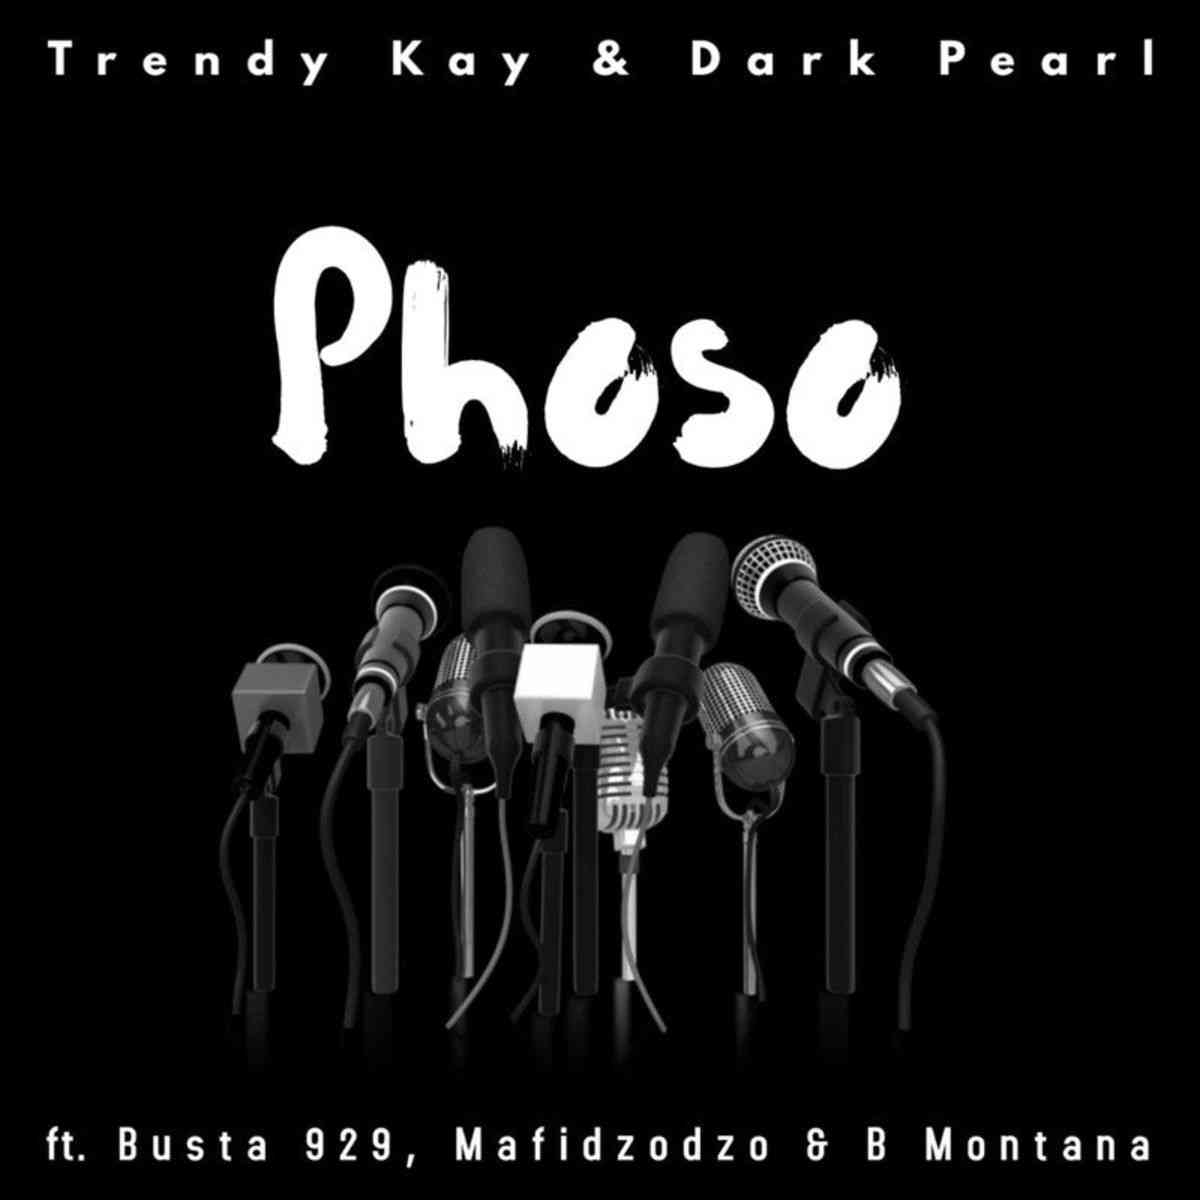 Trendy Kay & Dark Pearl – Phoso ft. Busta 929, Mafidzodzo & B Montana